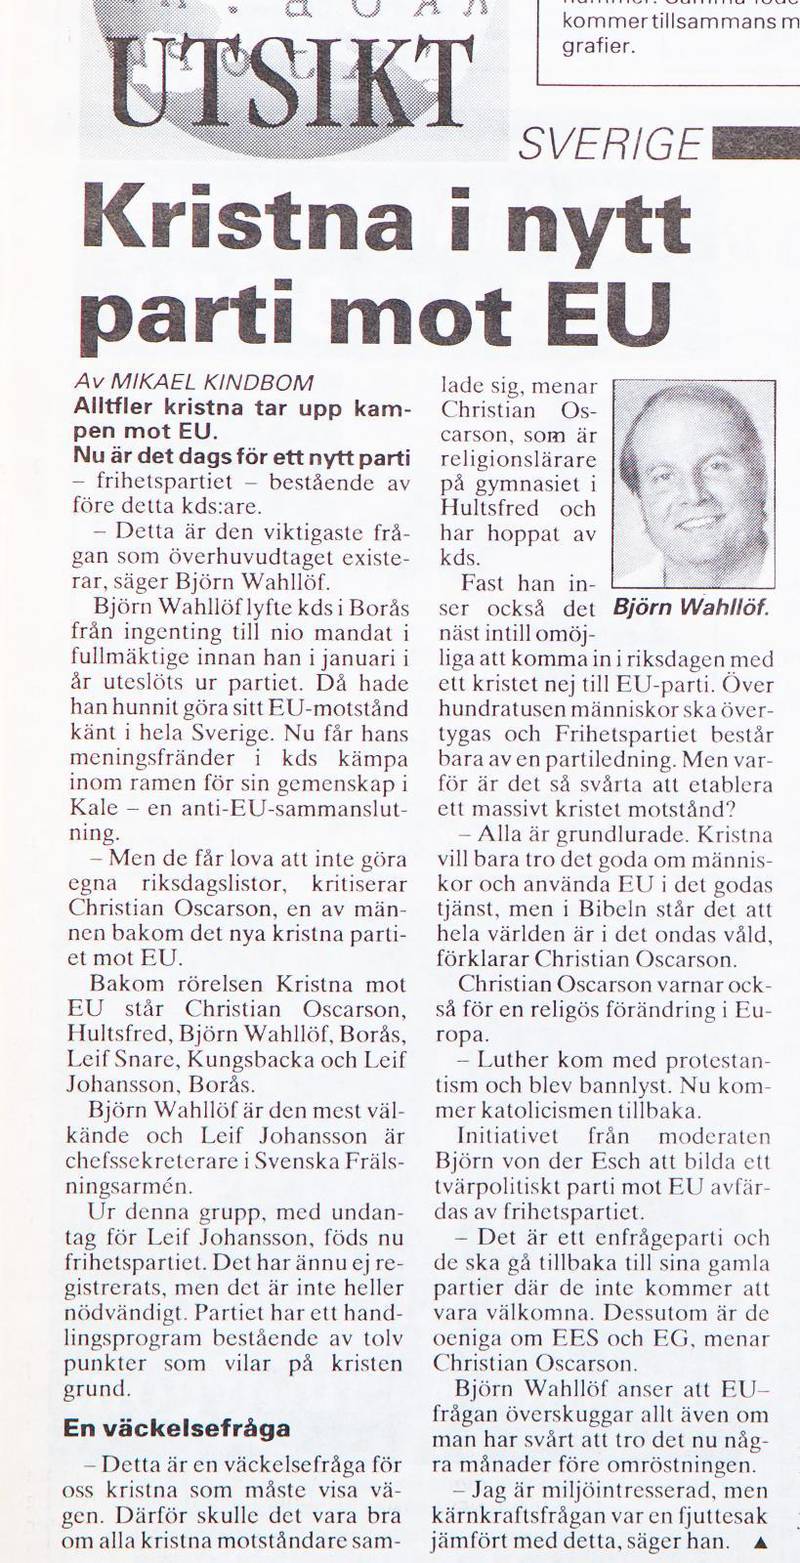 tidningsurklipp tidningen Dagen 1994.